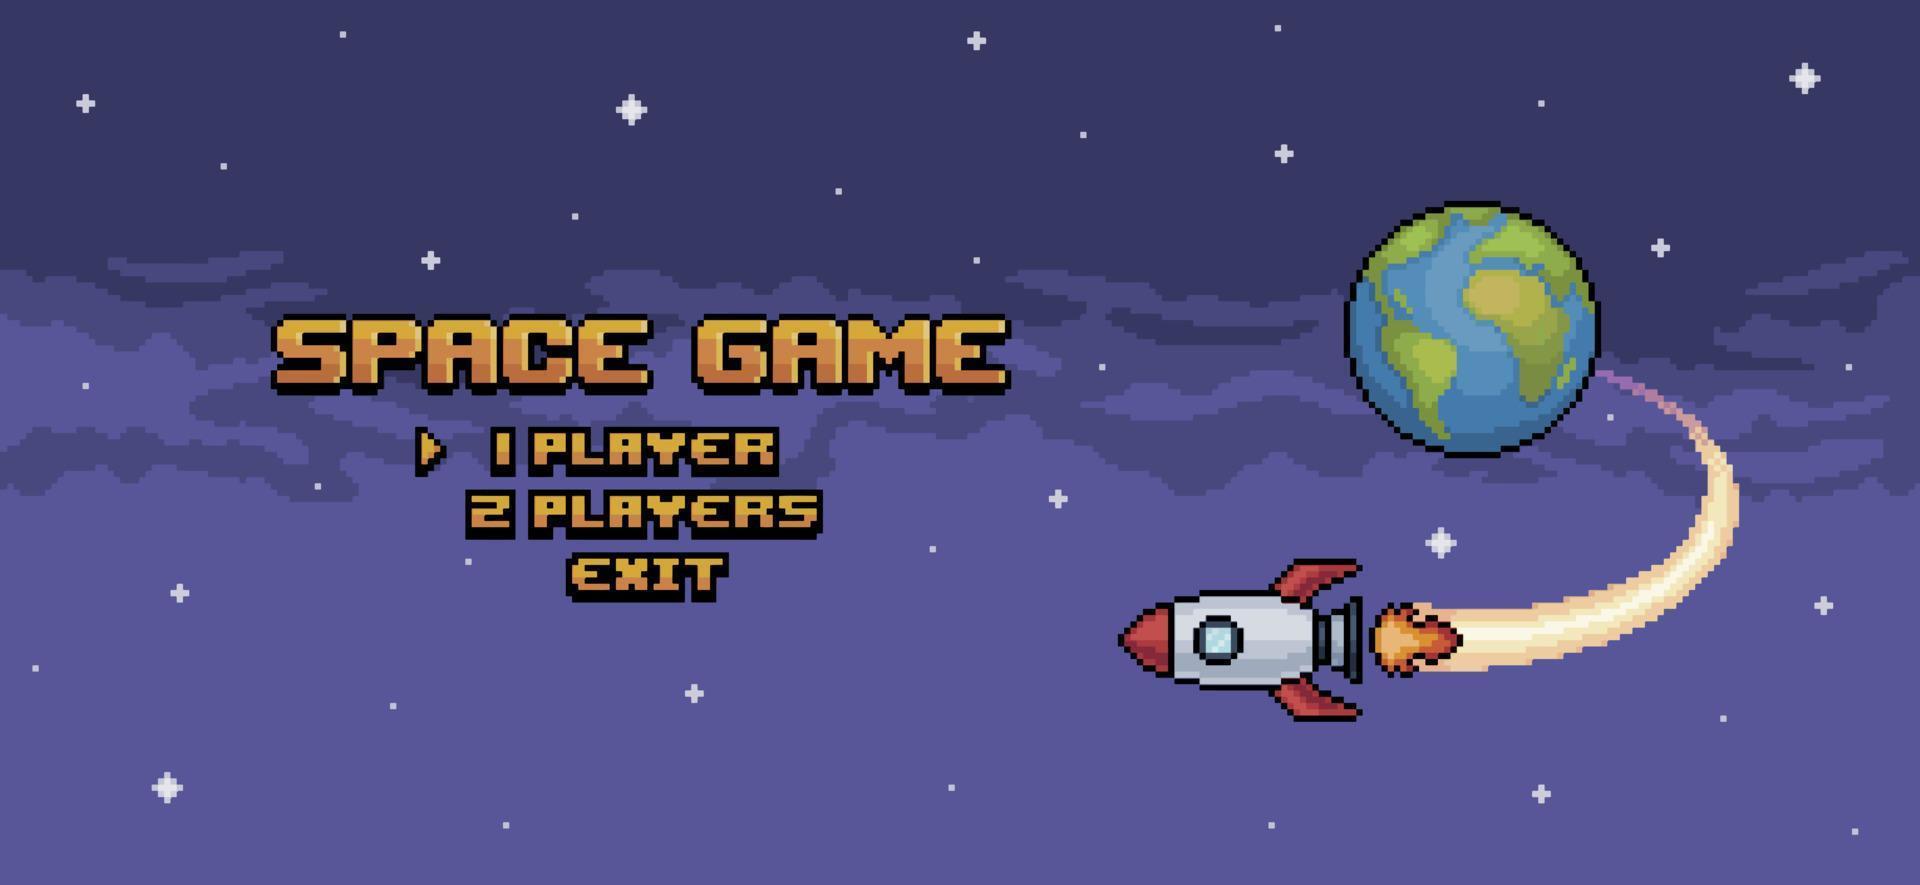 pantalla de inicio del juego espacial de pixel art, menú del juego con cohete volando sobre la tierra fondo de juego de 8 bits vector